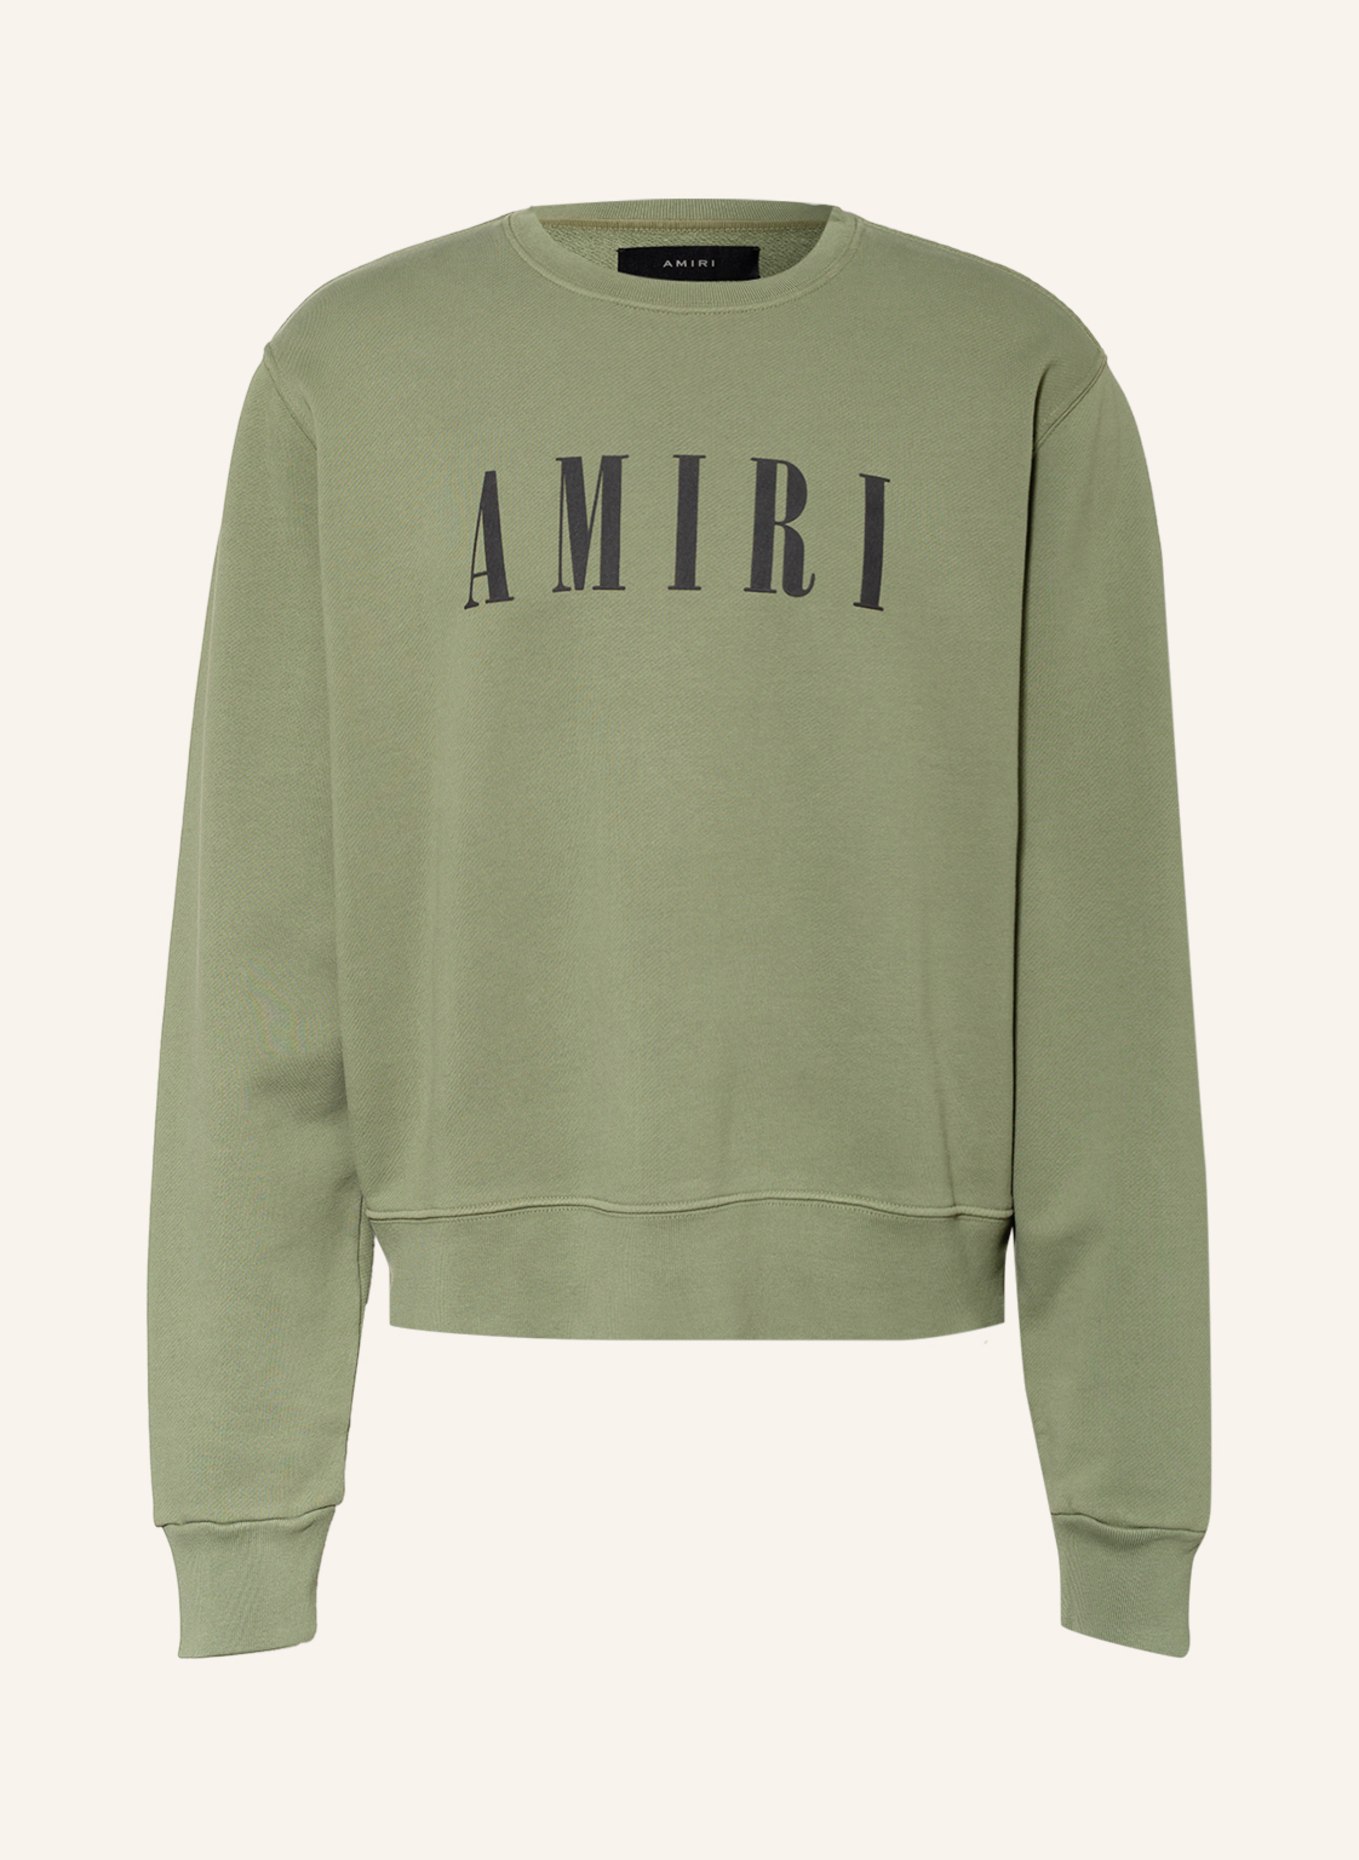 AMIRI Sweatshirt, Farbe: OLIV (Bild 1)